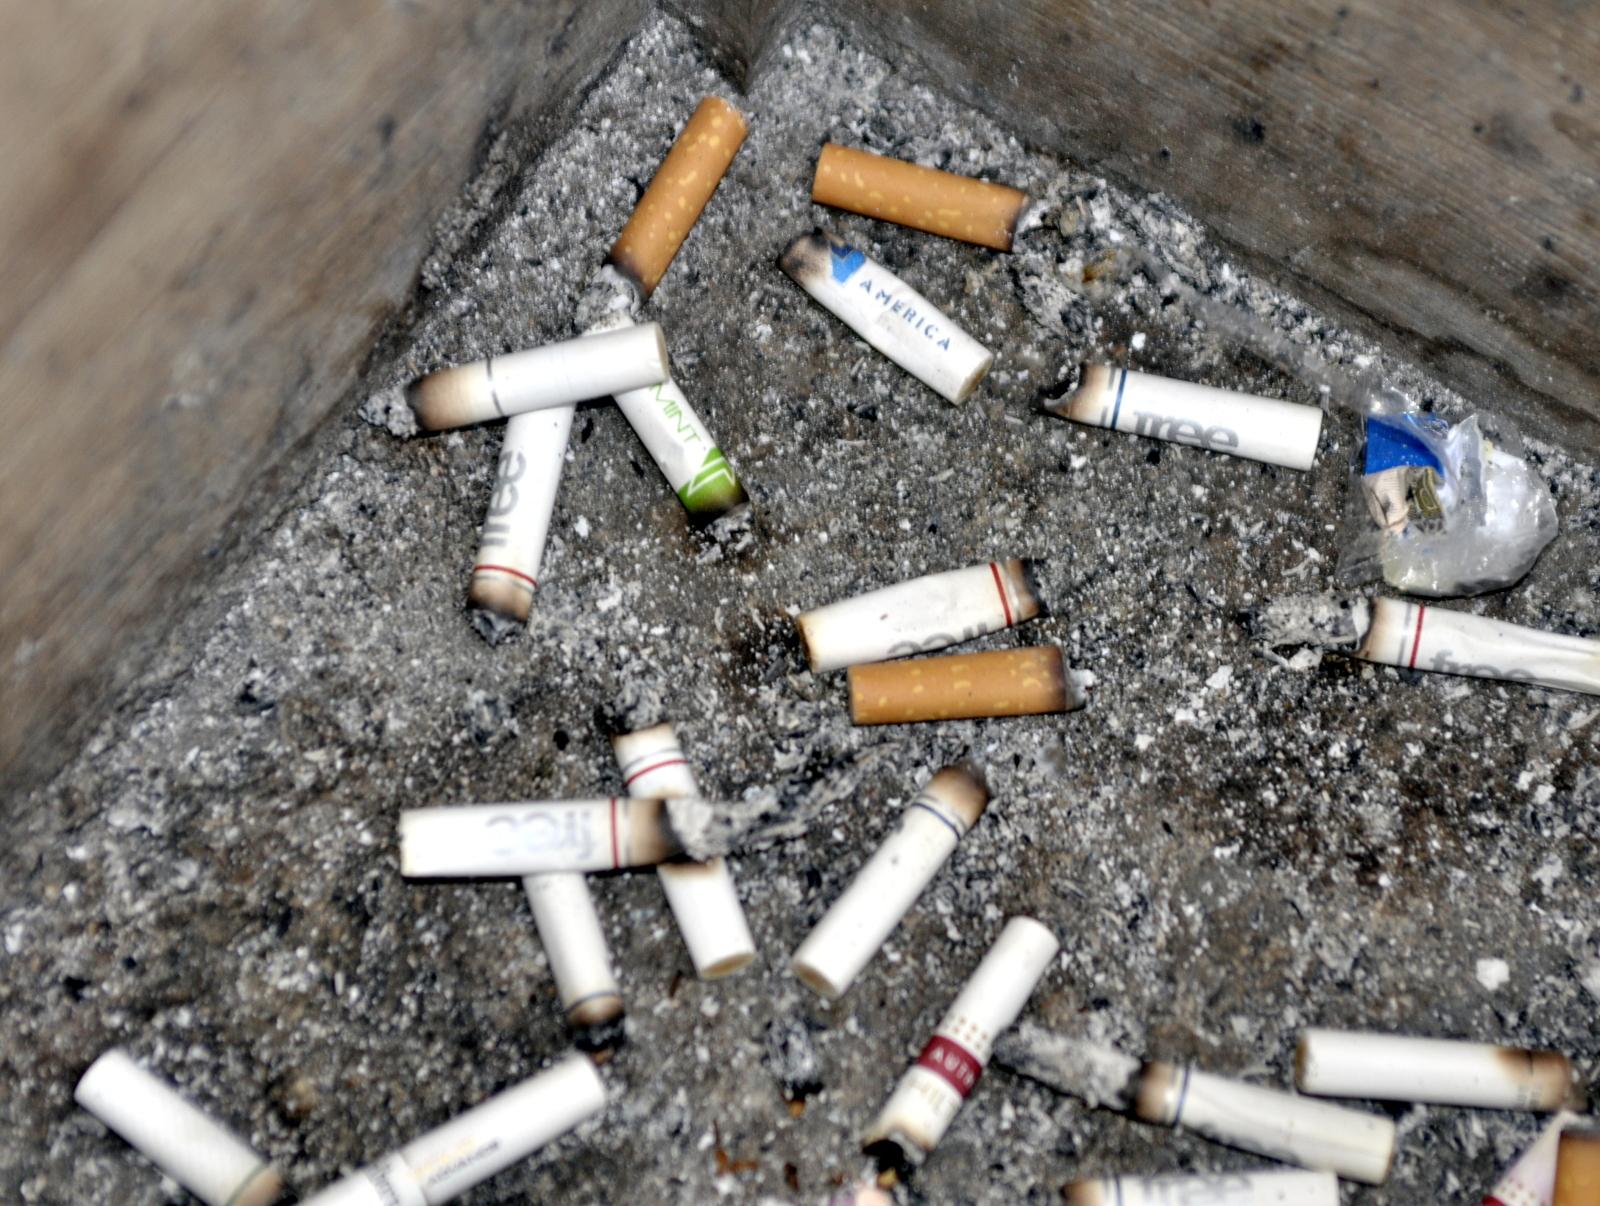 Vereador pede recipientes para bitucas de cigarro junto a lixeiras